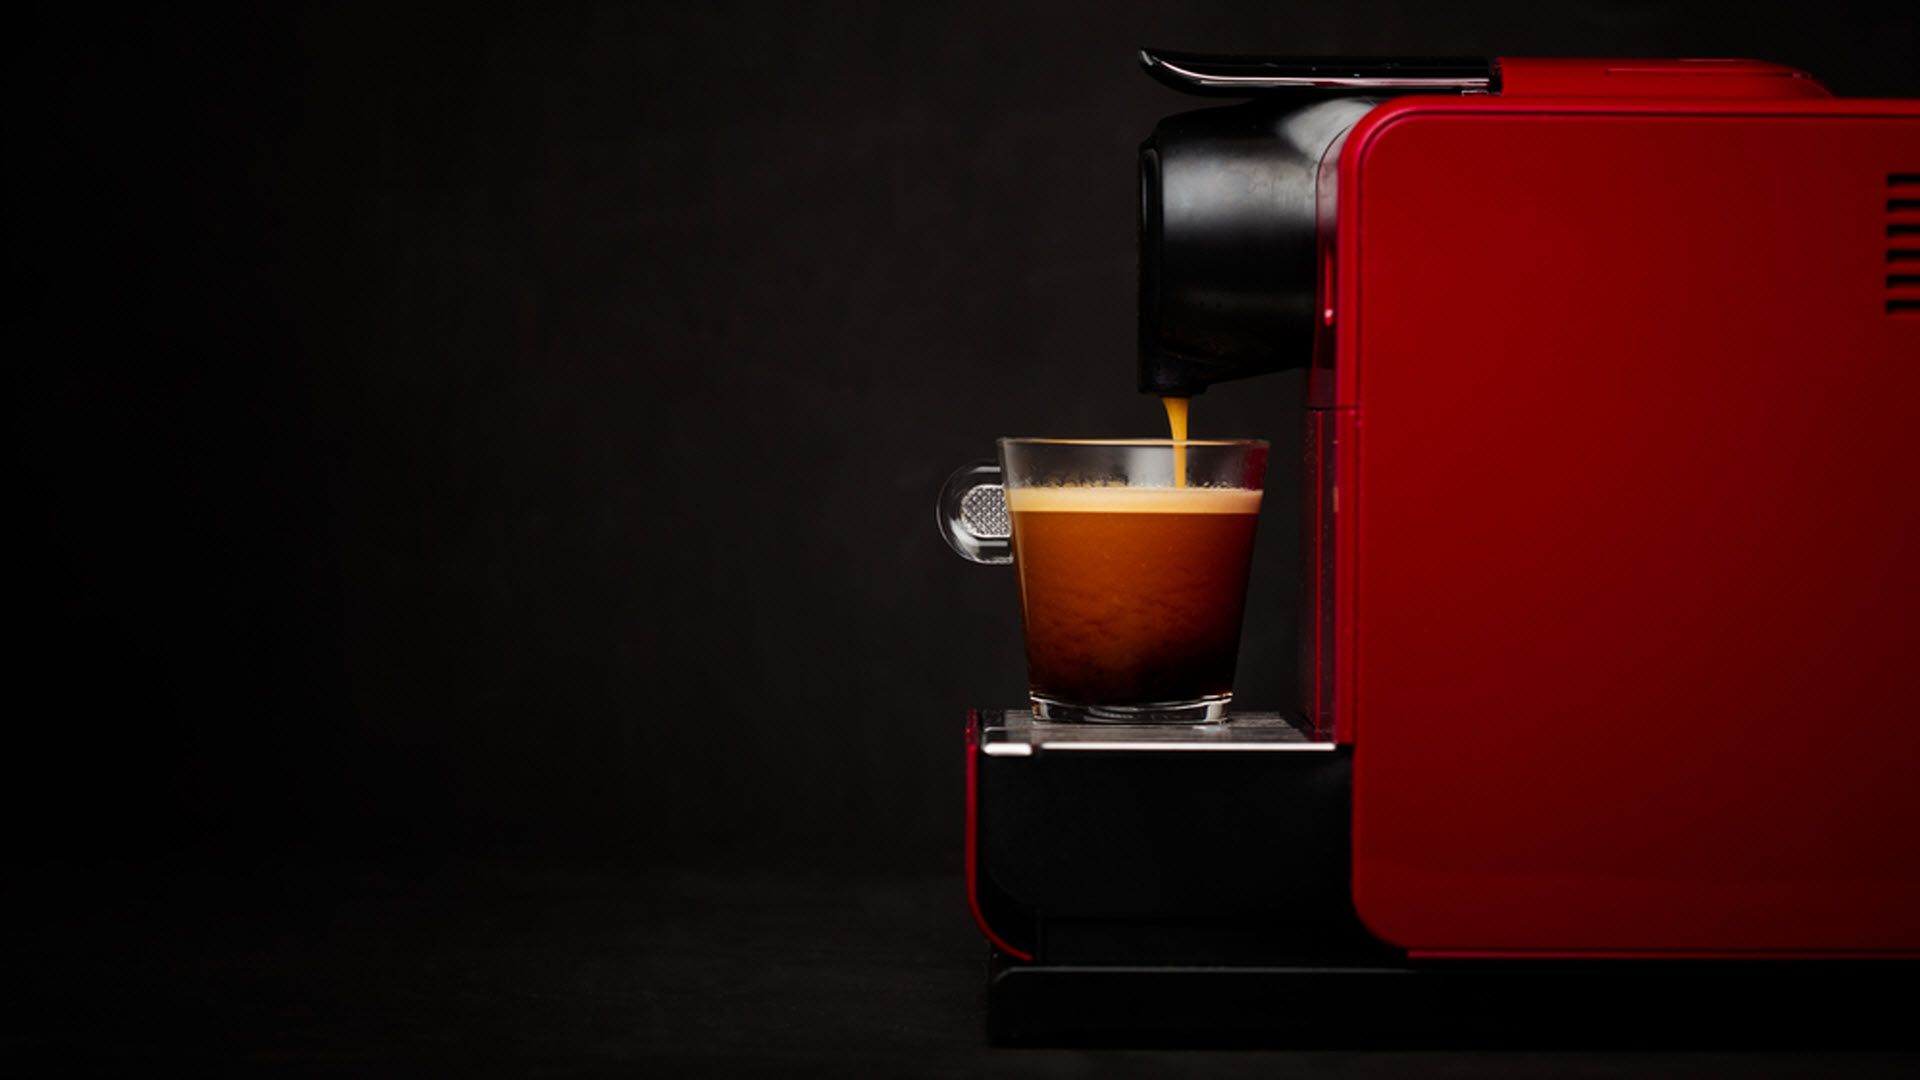 Consigue una cafetera Nespresso gratis gracias a esta promoción - Showroom